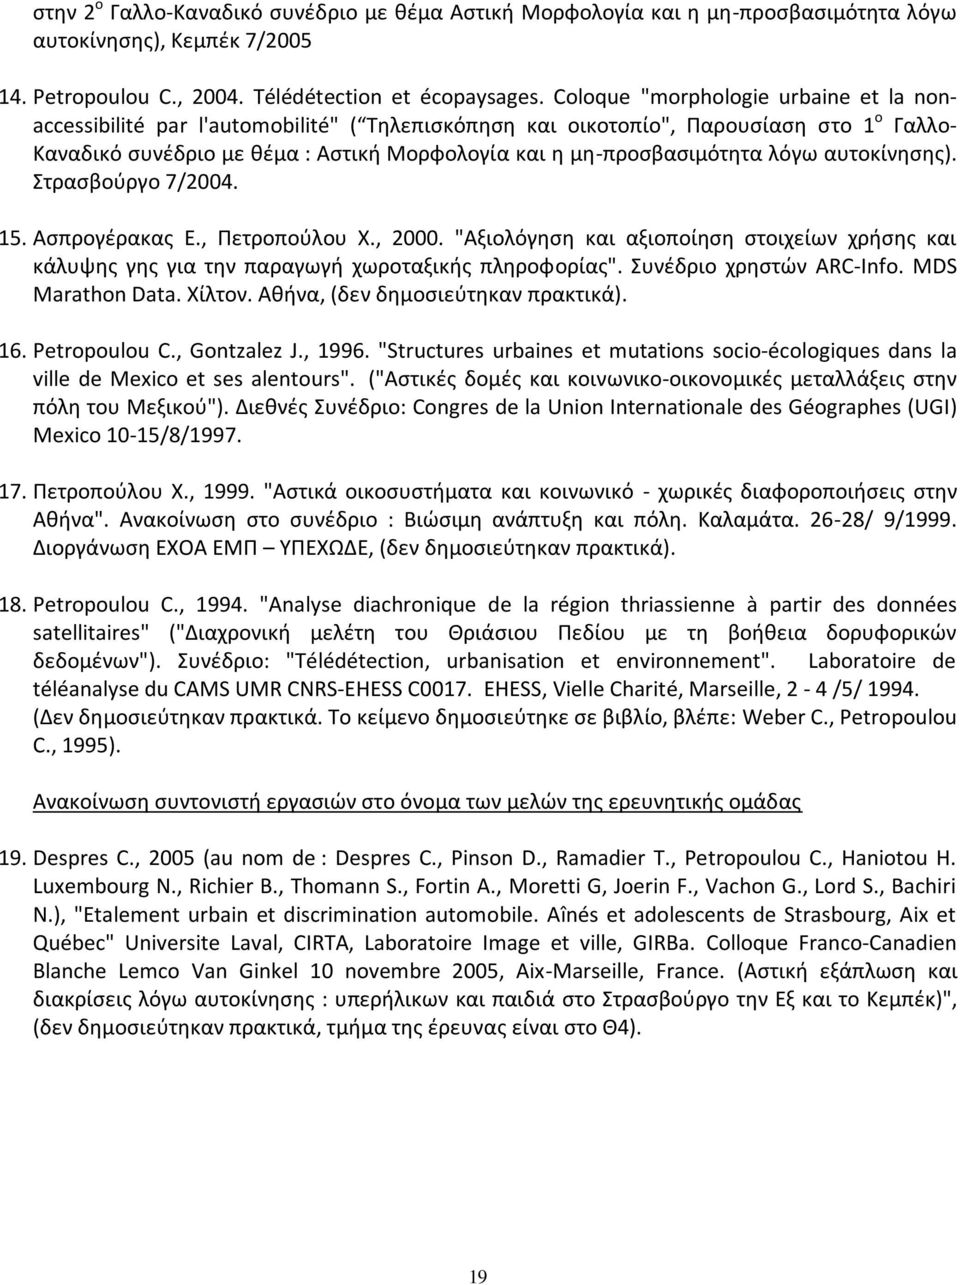 λόγω αυτοκίνησης). Στρασβούργο 7/2004. 15. Ασπρογέρακας Ε., Πετροπούλου Χ., 2000. "Αξιολόγηση και αξιοποίηση στοιχείων χρήσης και κάλυψης γης για την παραγωγή χωροταξικής πληροφορίας".